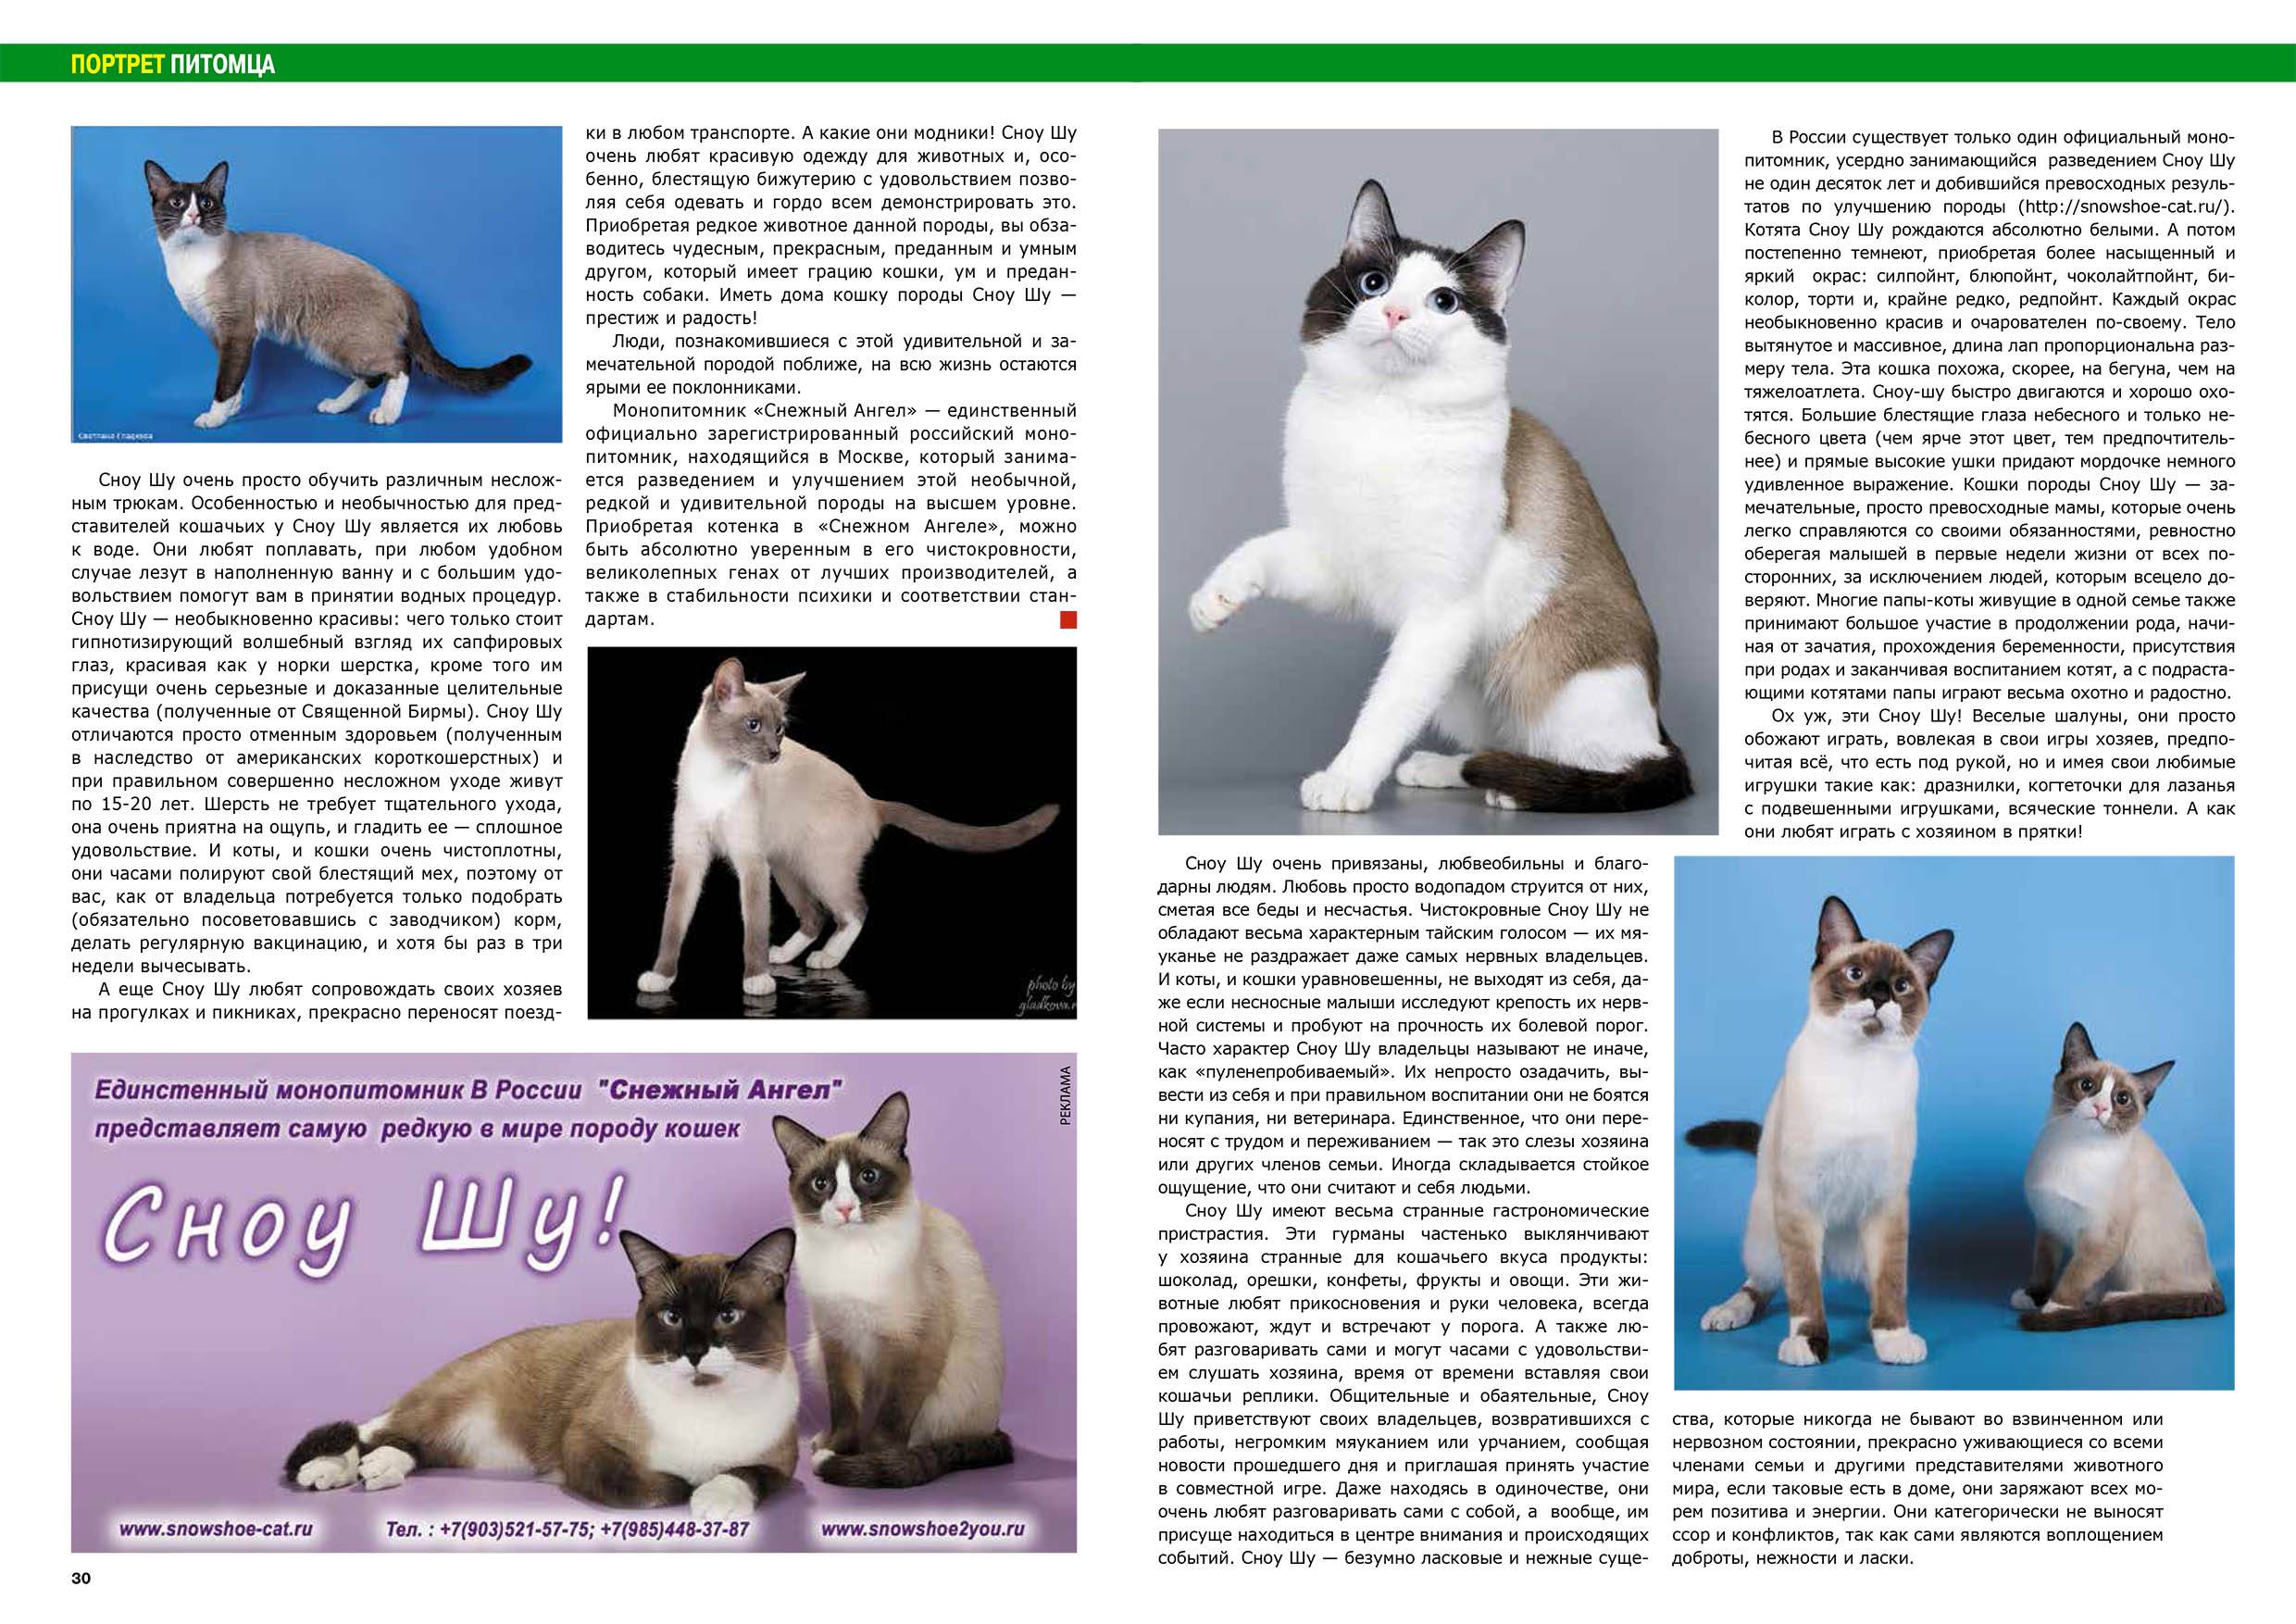 Сноу-шу: описание породы кошек, характер, отзывы (с фото и видео)